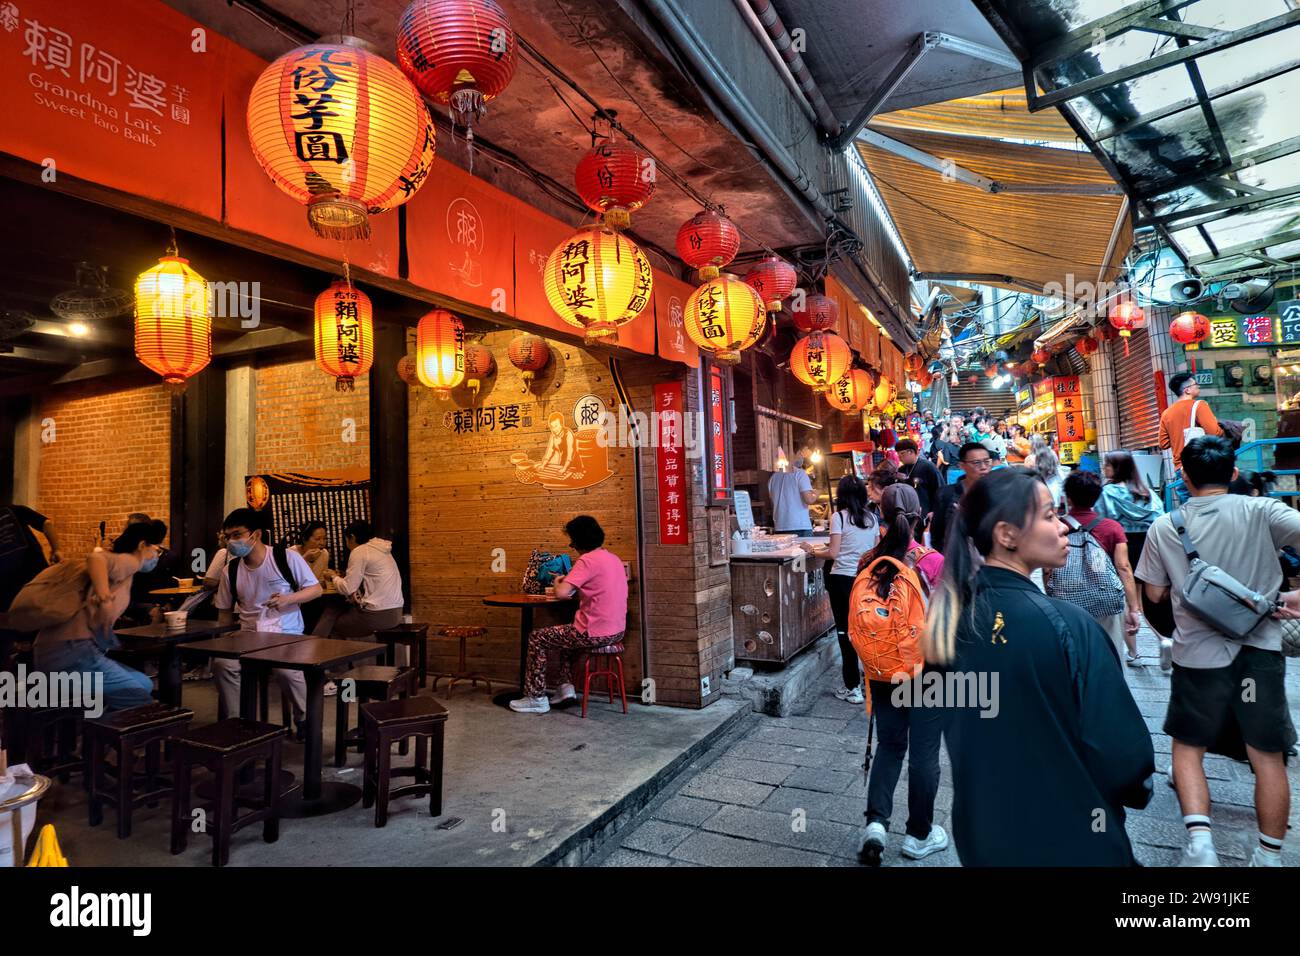 Famoso ritrovo gastronomico, Jiufen Old Street, Ruifang, Taipei, Taiwan Foto Stock